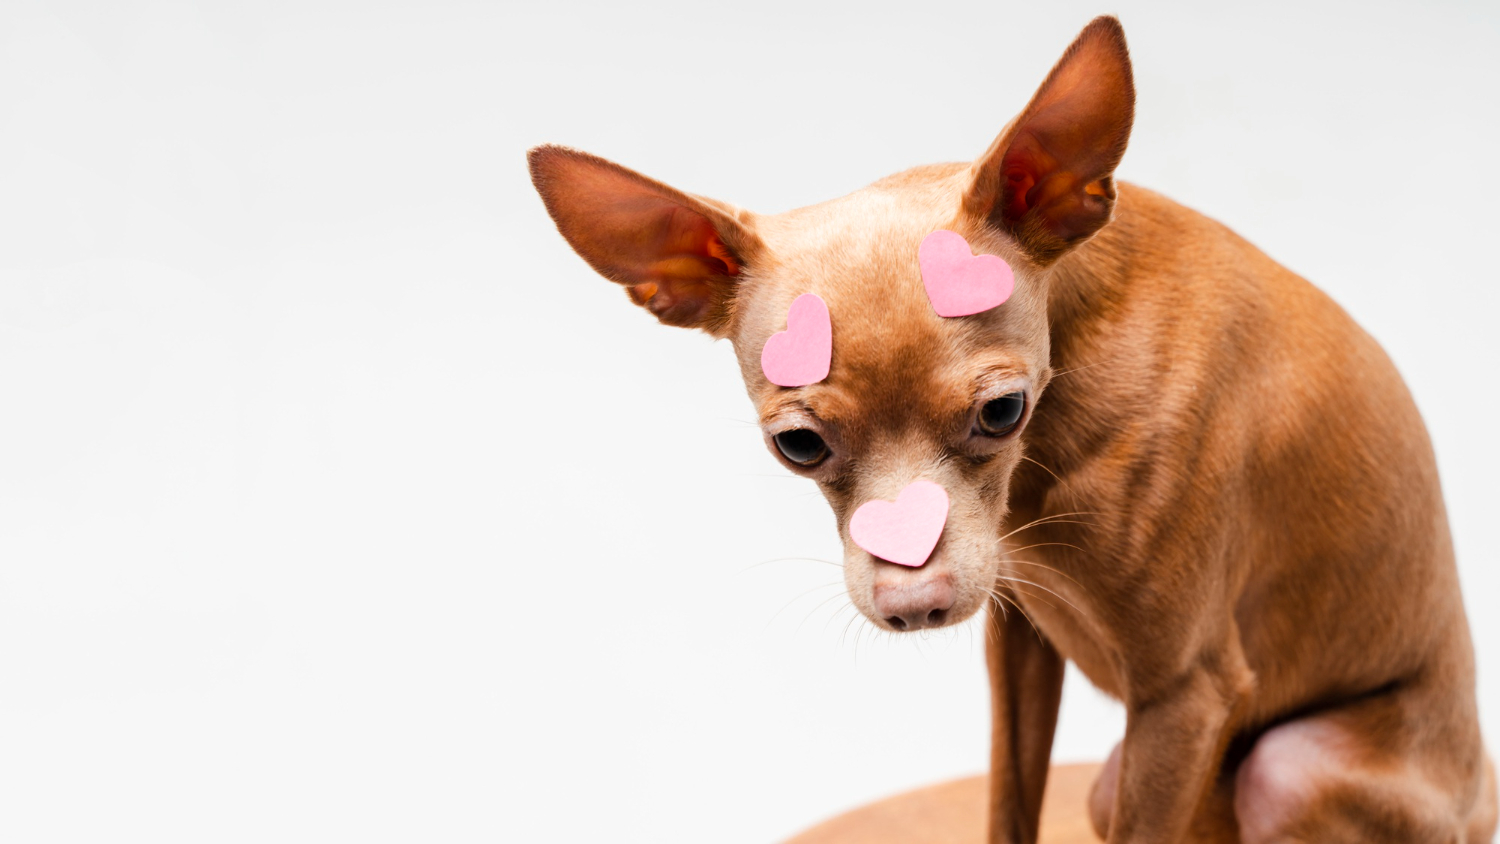 Chihuahua dog brain size